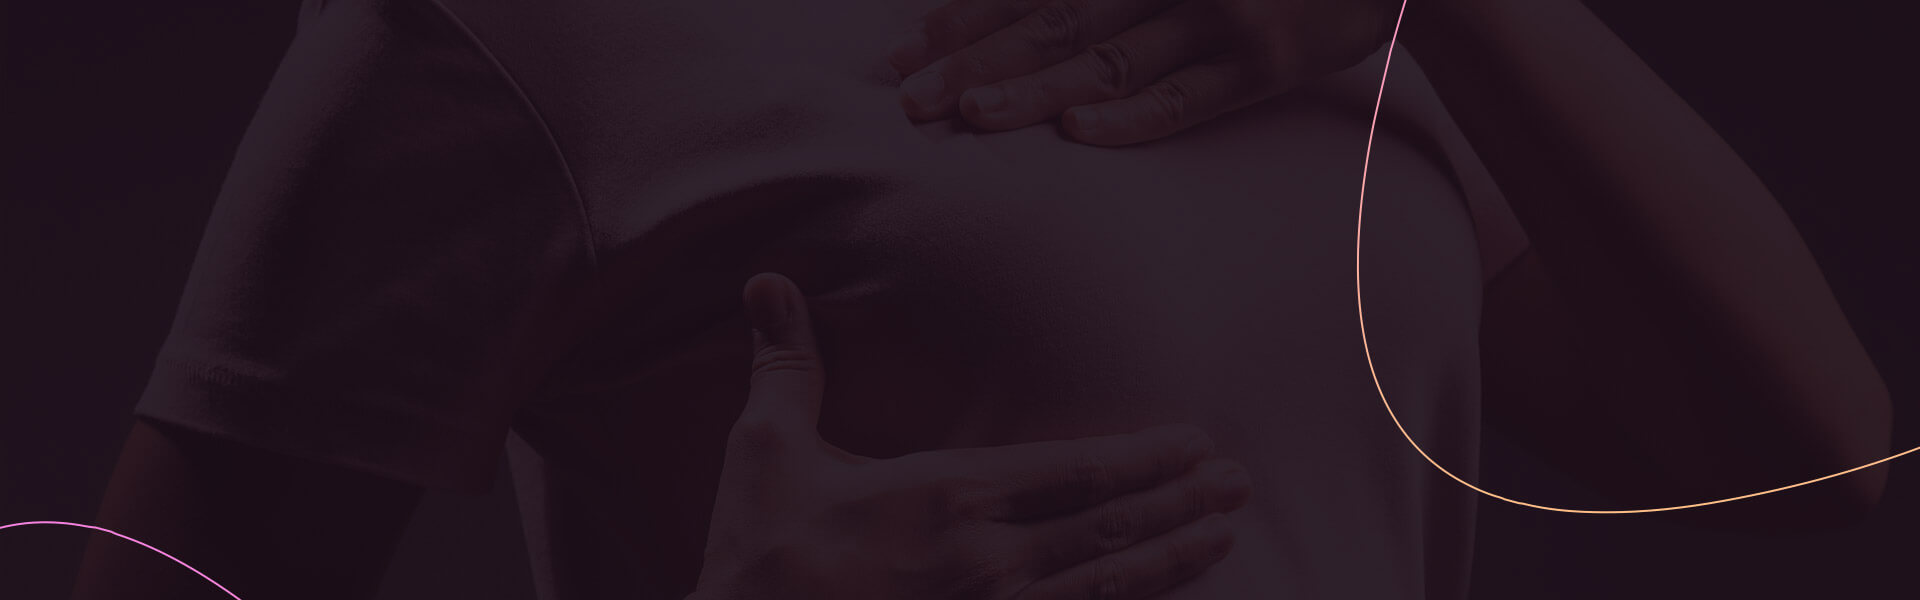 Manejo do câncer de mama Triplo Negativo – 2° Simpósio Câncer de Mama Brasil